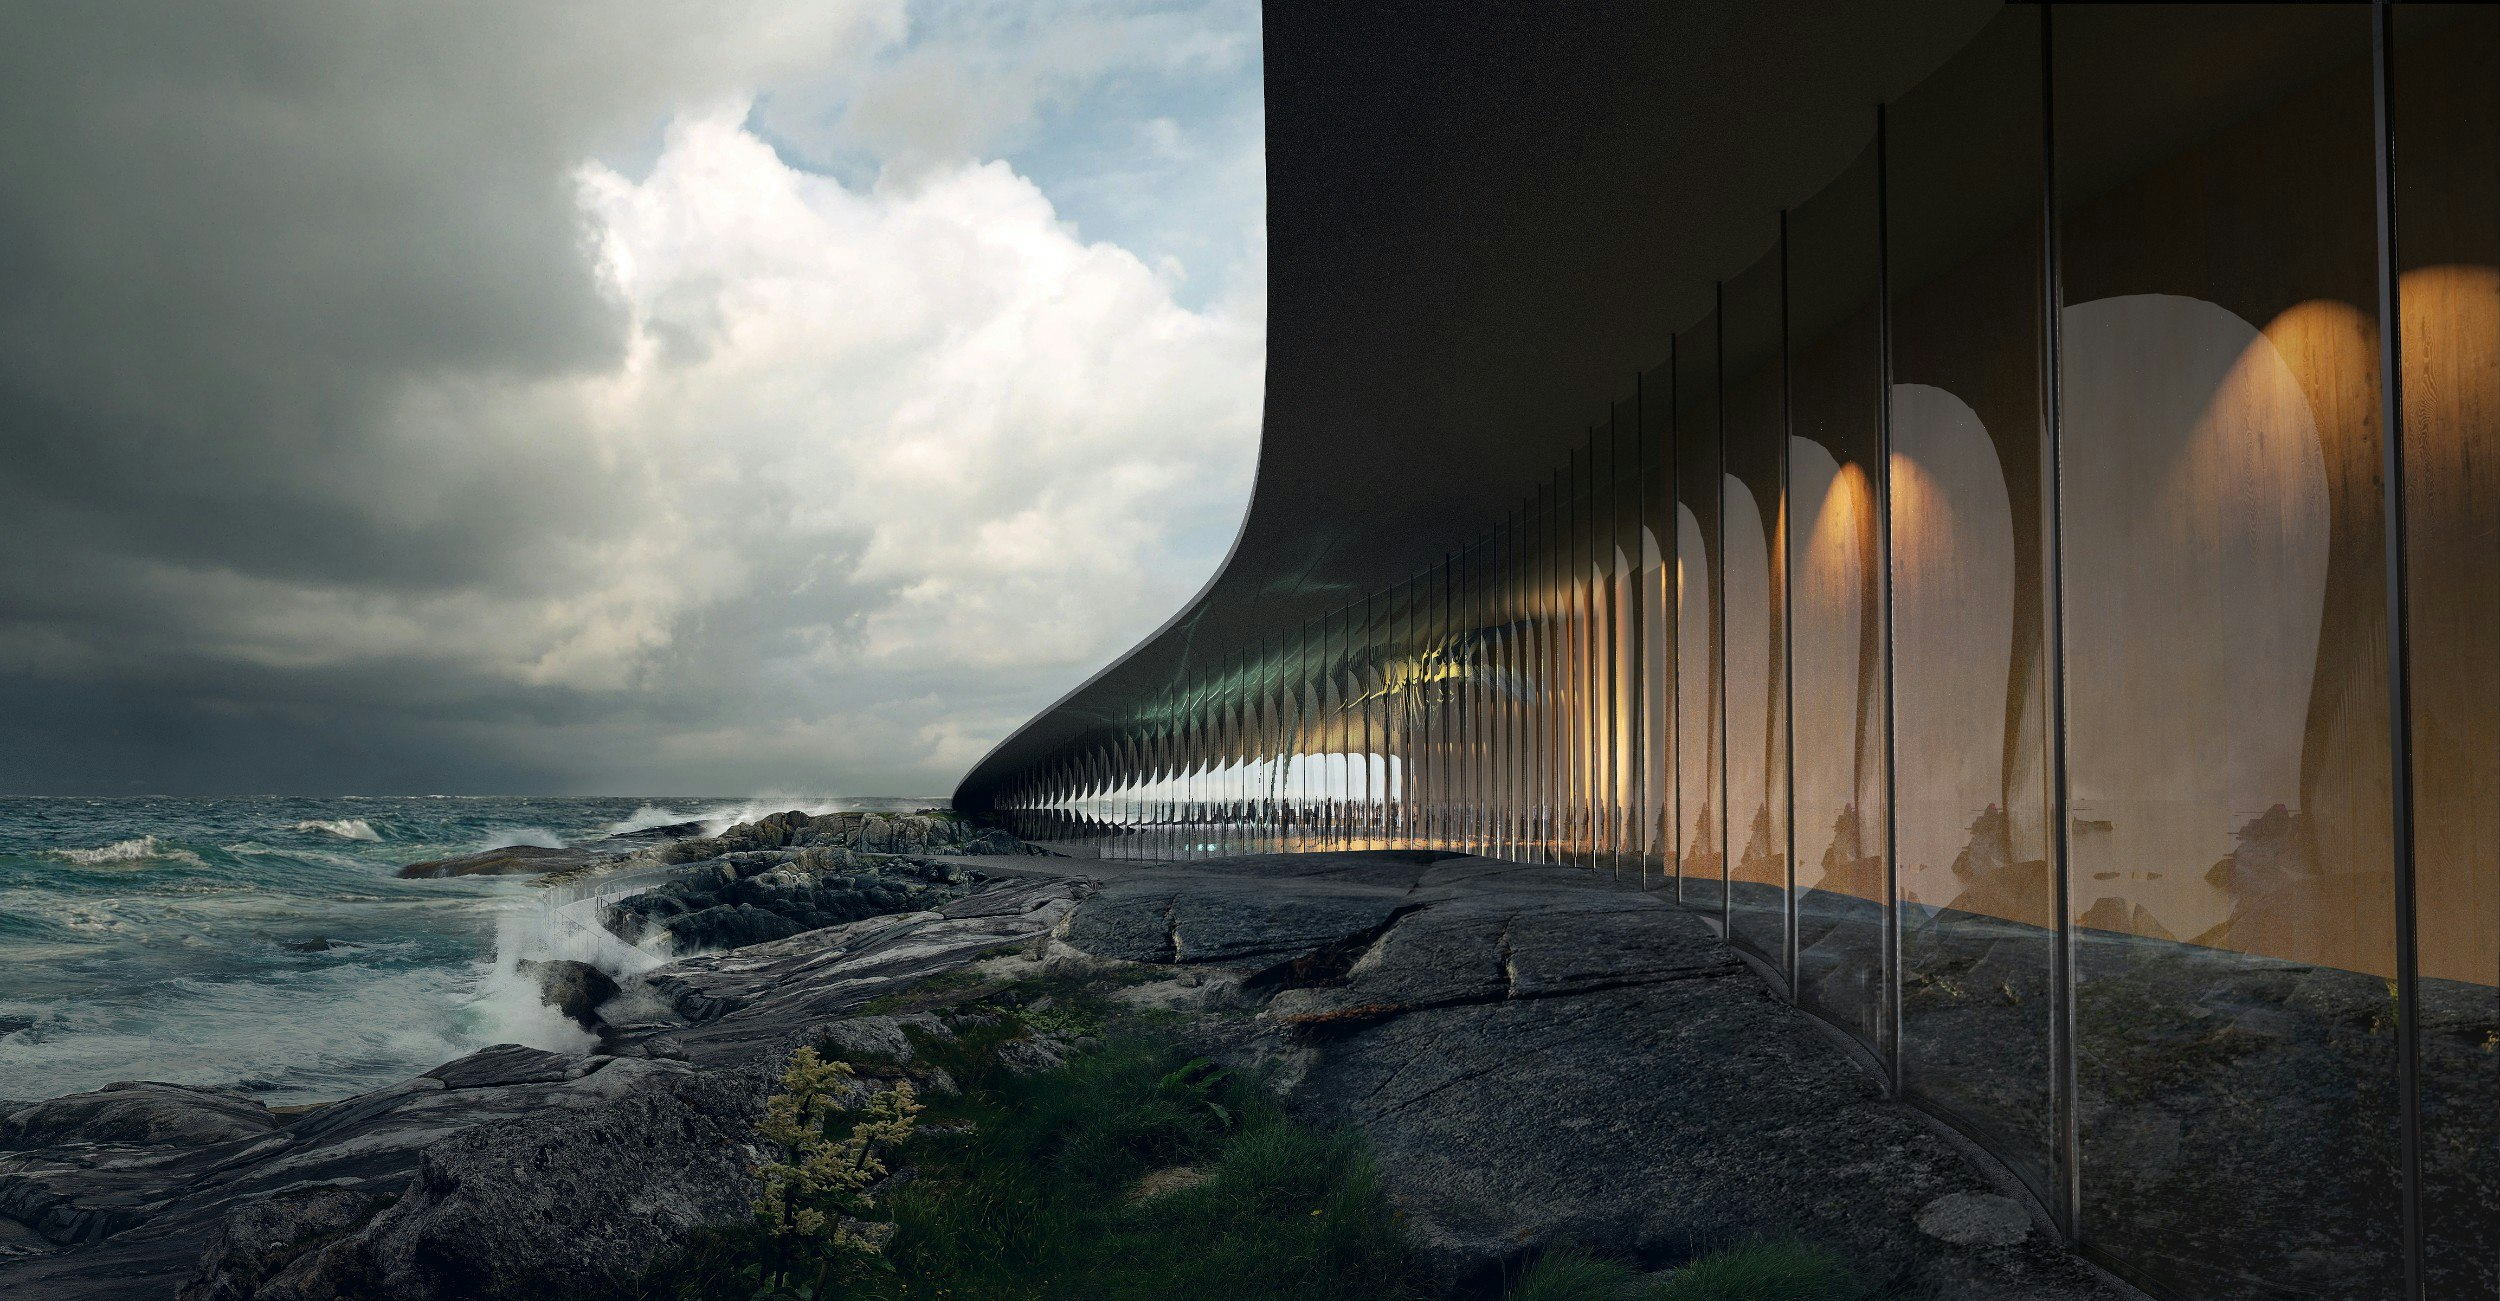 A rendering of The Whale in Andoya, Norway